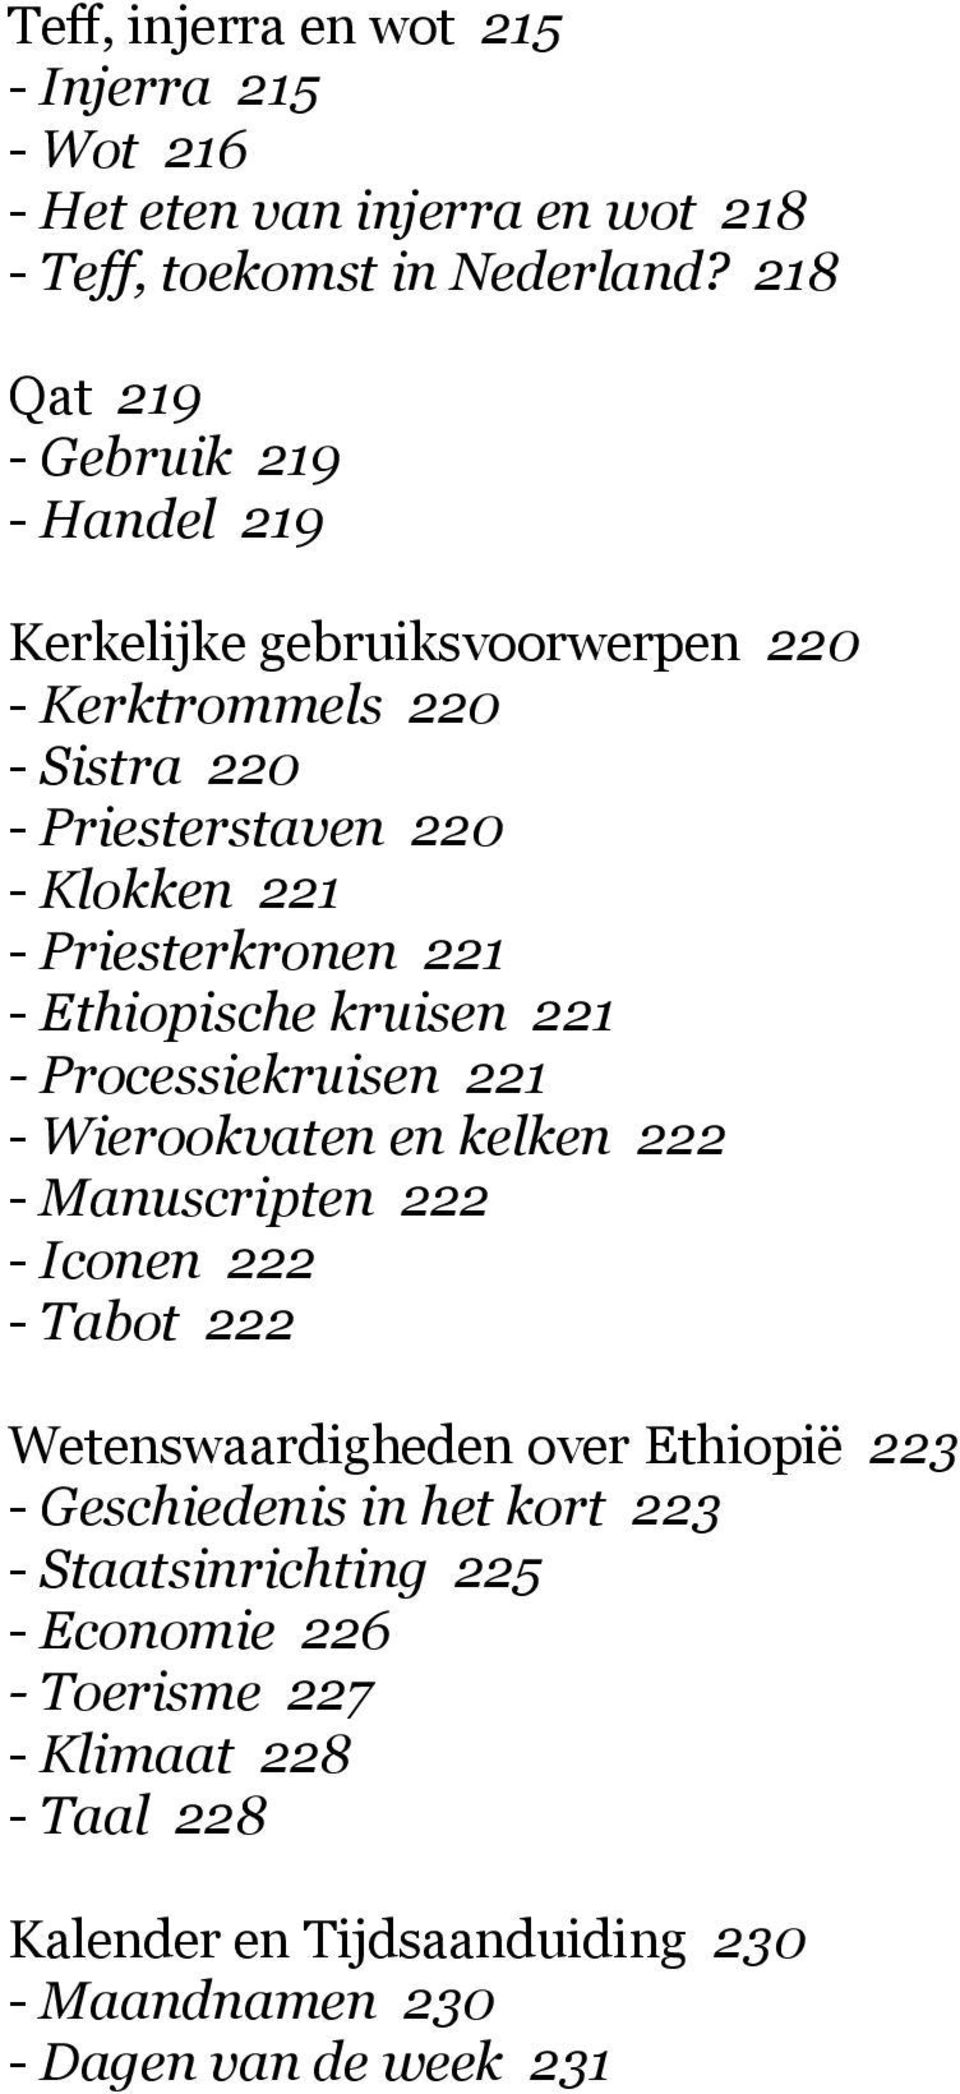 Priesterkronen 221 - Ethiopische kruisen 221 - Processiekruisen 221 - Wierookvaten en kelken 222 - Manuscripten 222 - Iconen 222 - Tabot 222